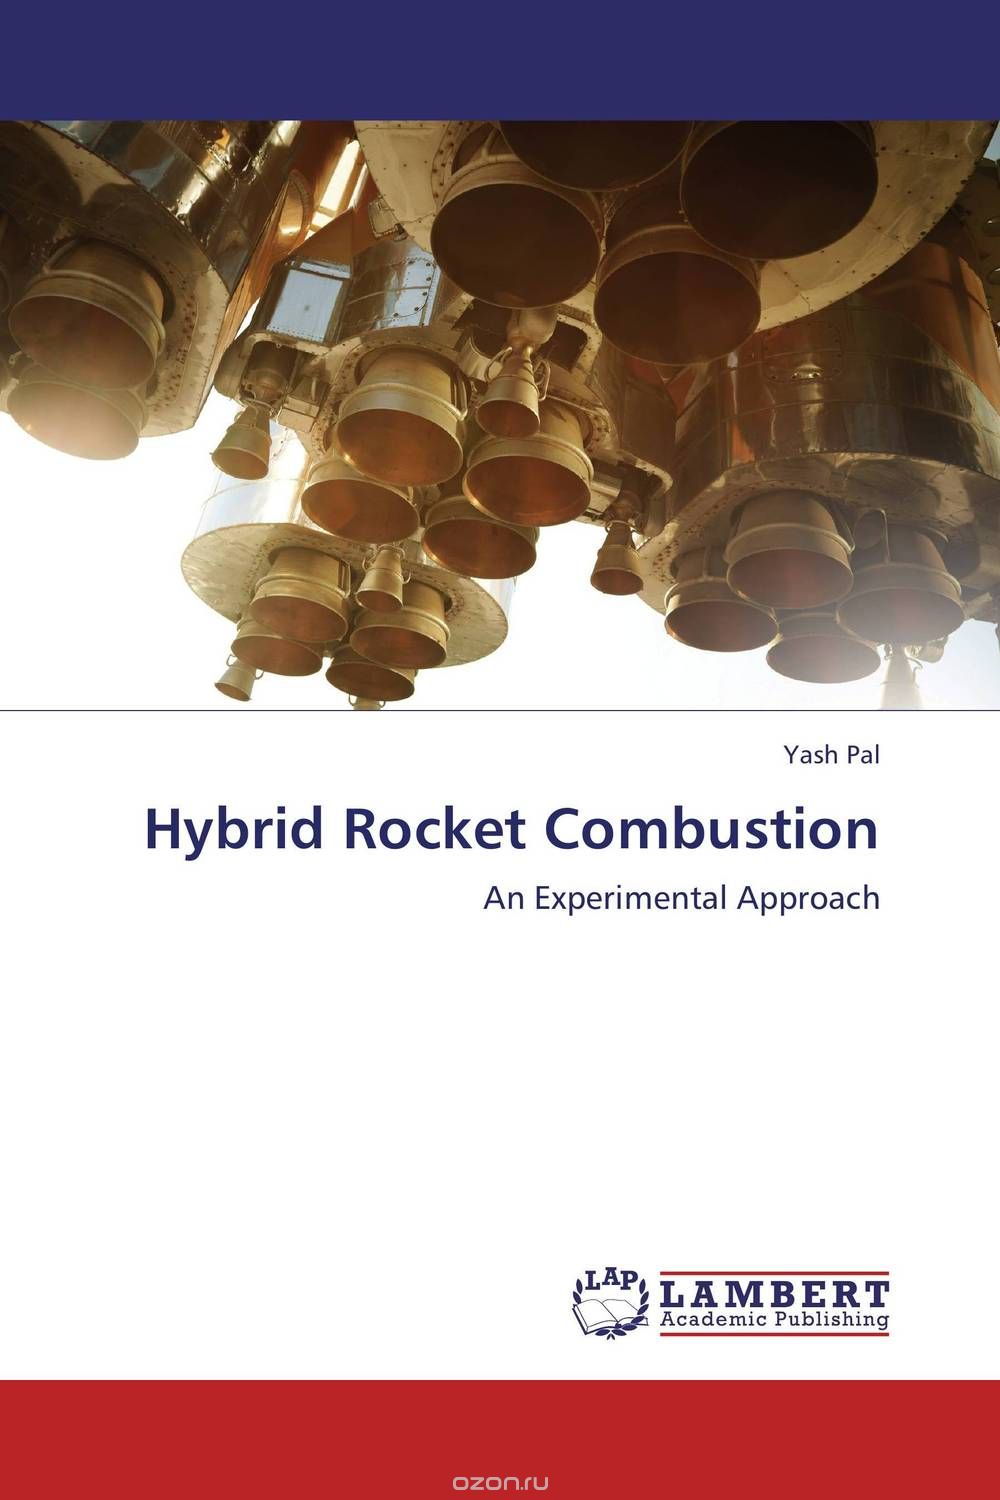 Скачать книгу "Hybrid Rocket Combustion"